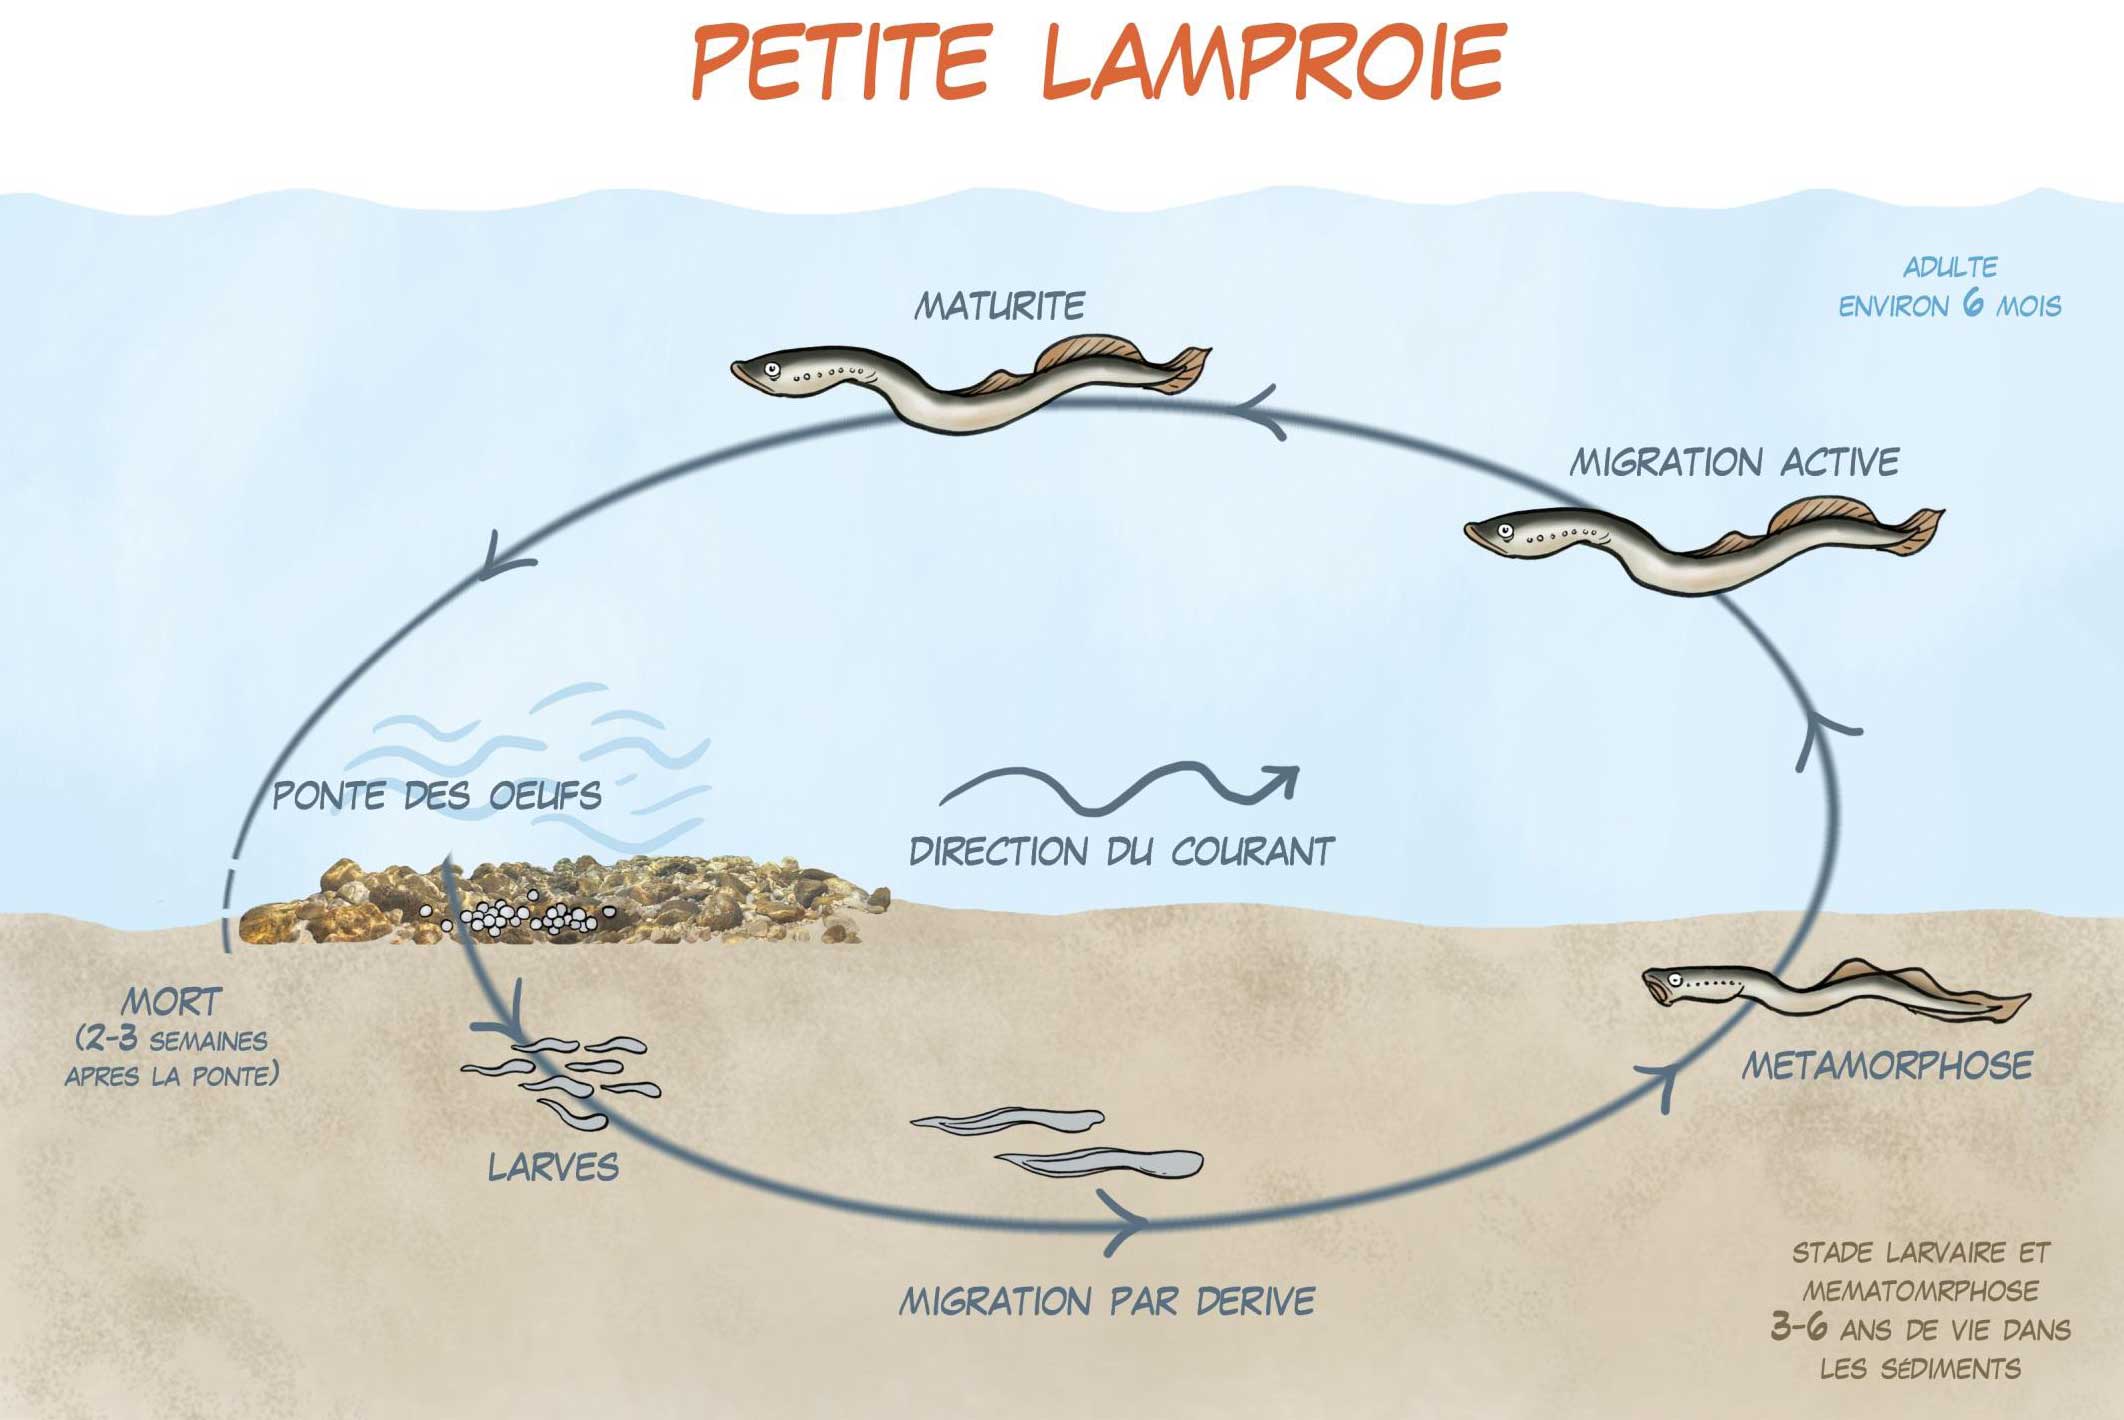 Le cycle de vie de la petite lamproie